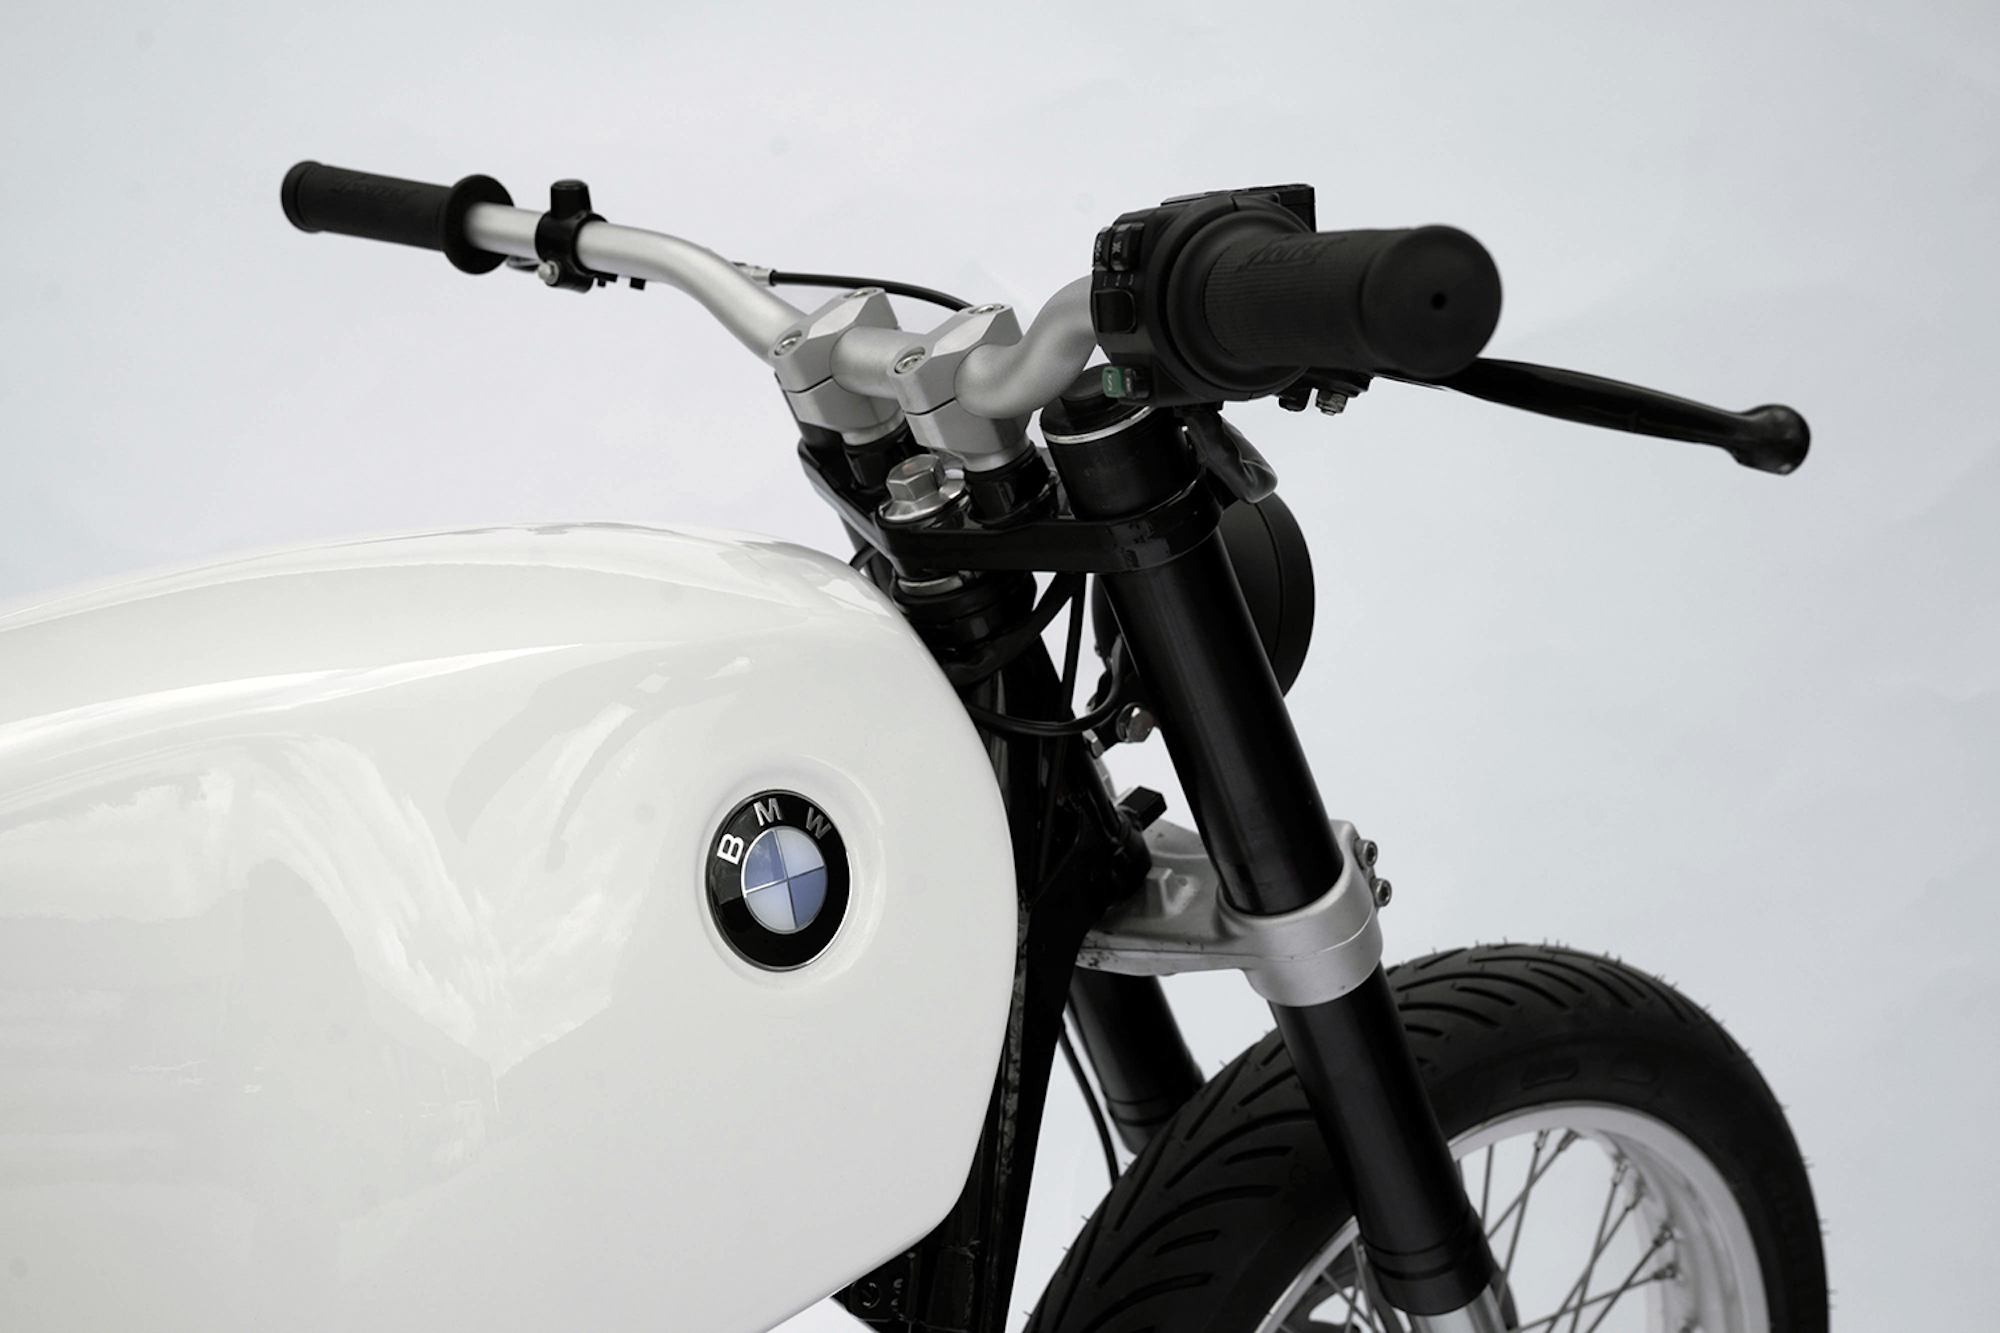 宝马R80捐赠自行车安装了LM Creations电动车传动系统。媒体来源The Pack。